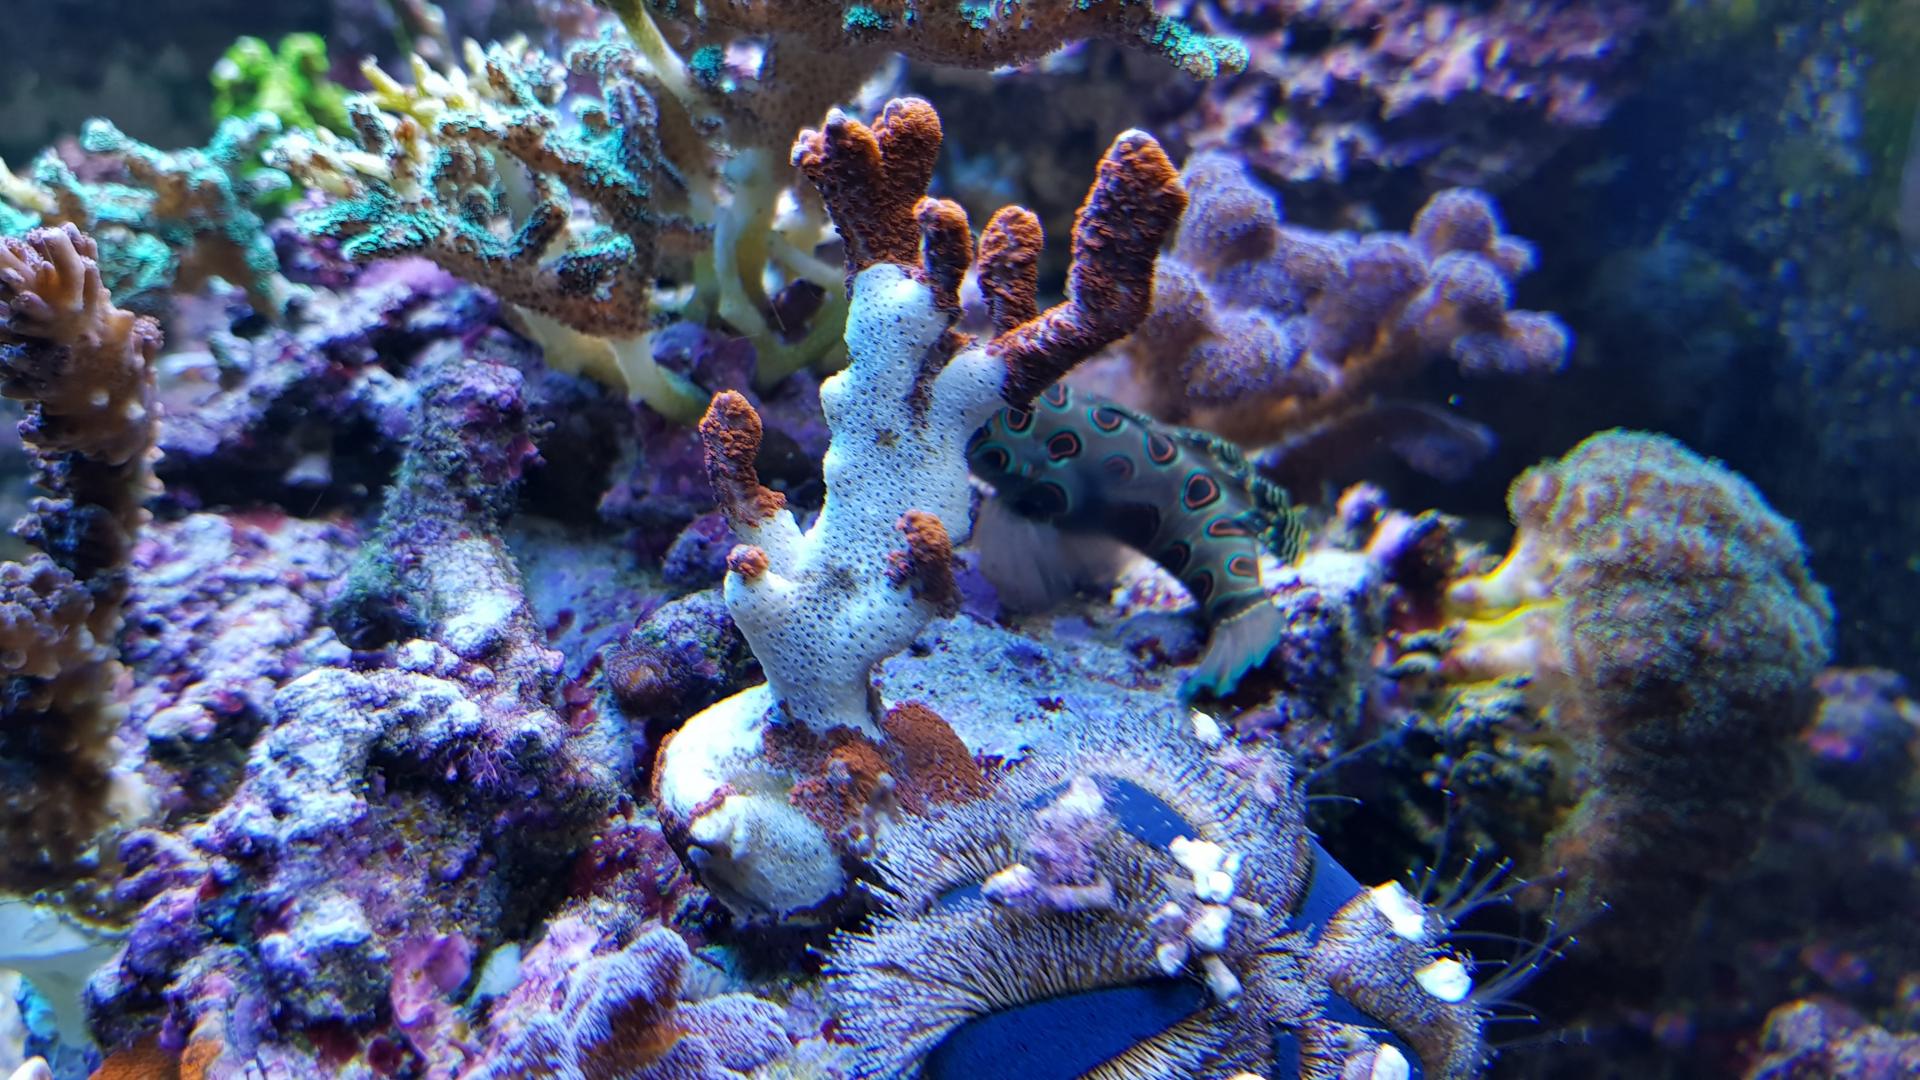 вычистил САМП. многие кораллы пришлось безжалостно выбросить, чтобы не разн...